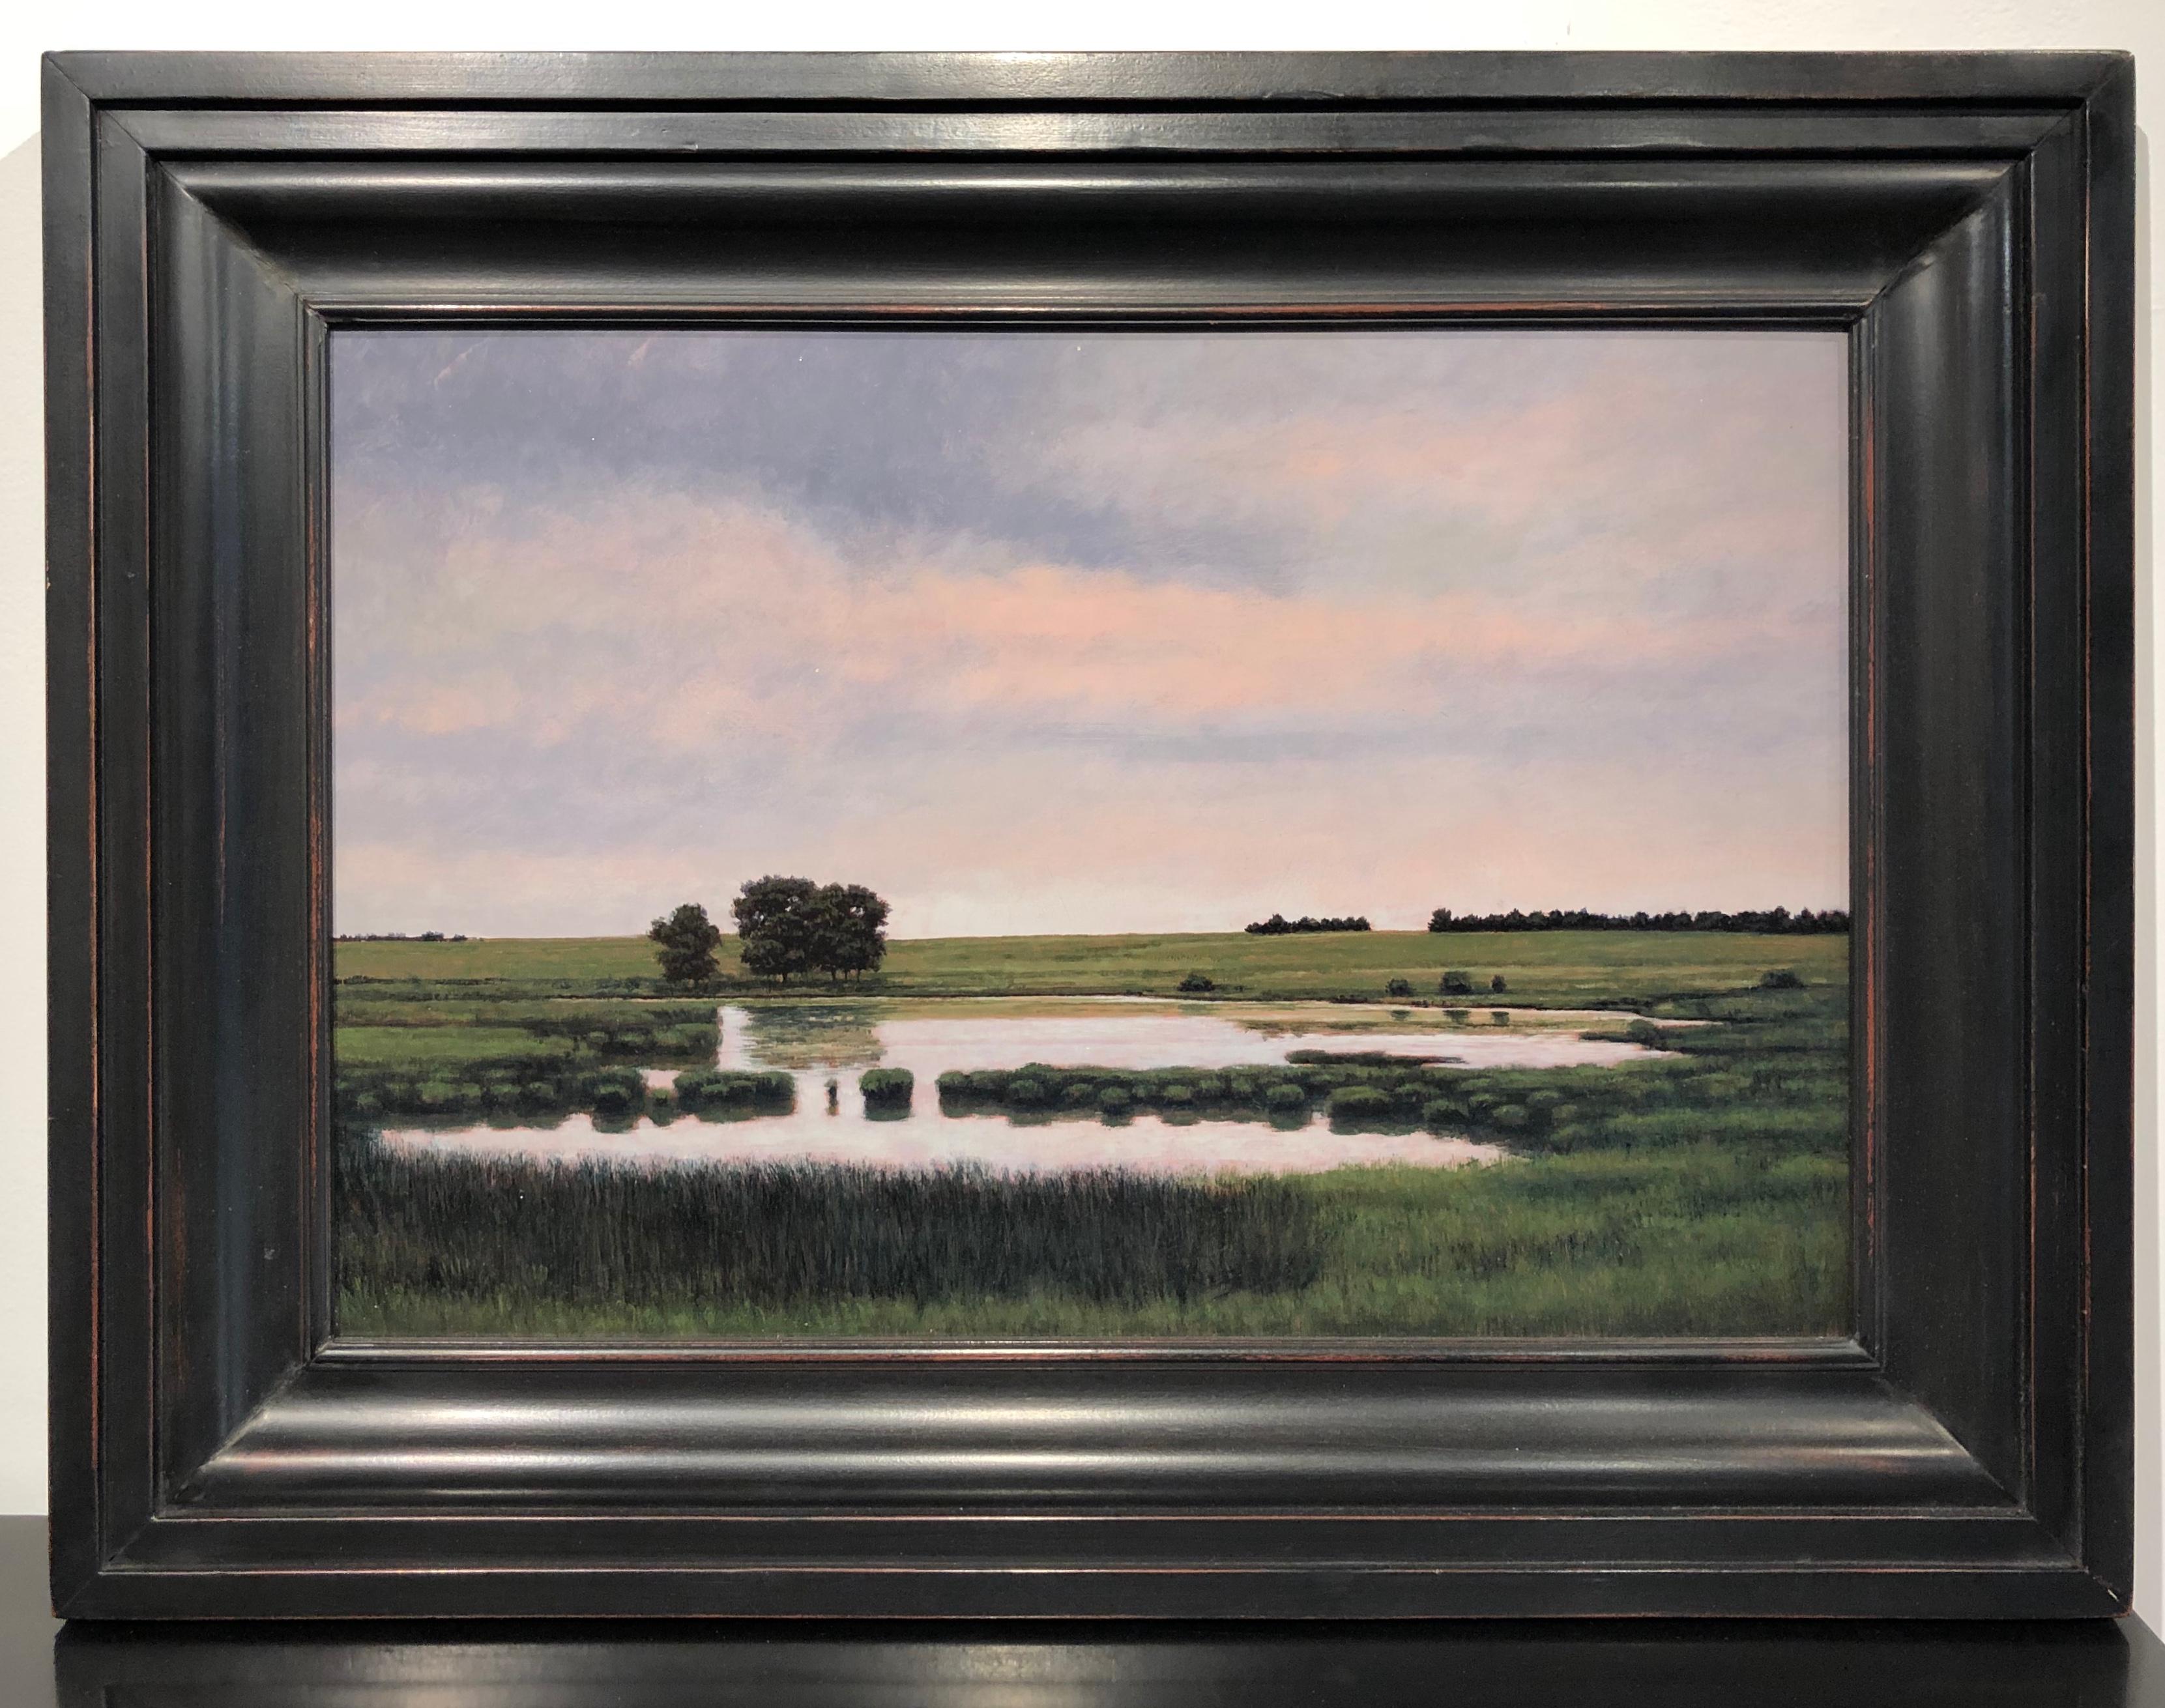 Teich in der Nähe der St. Cloud, MN – ruhige pastorale Landschaft mit schwimmendem Wasser, gerahmt – Painting von Jeff Aeling